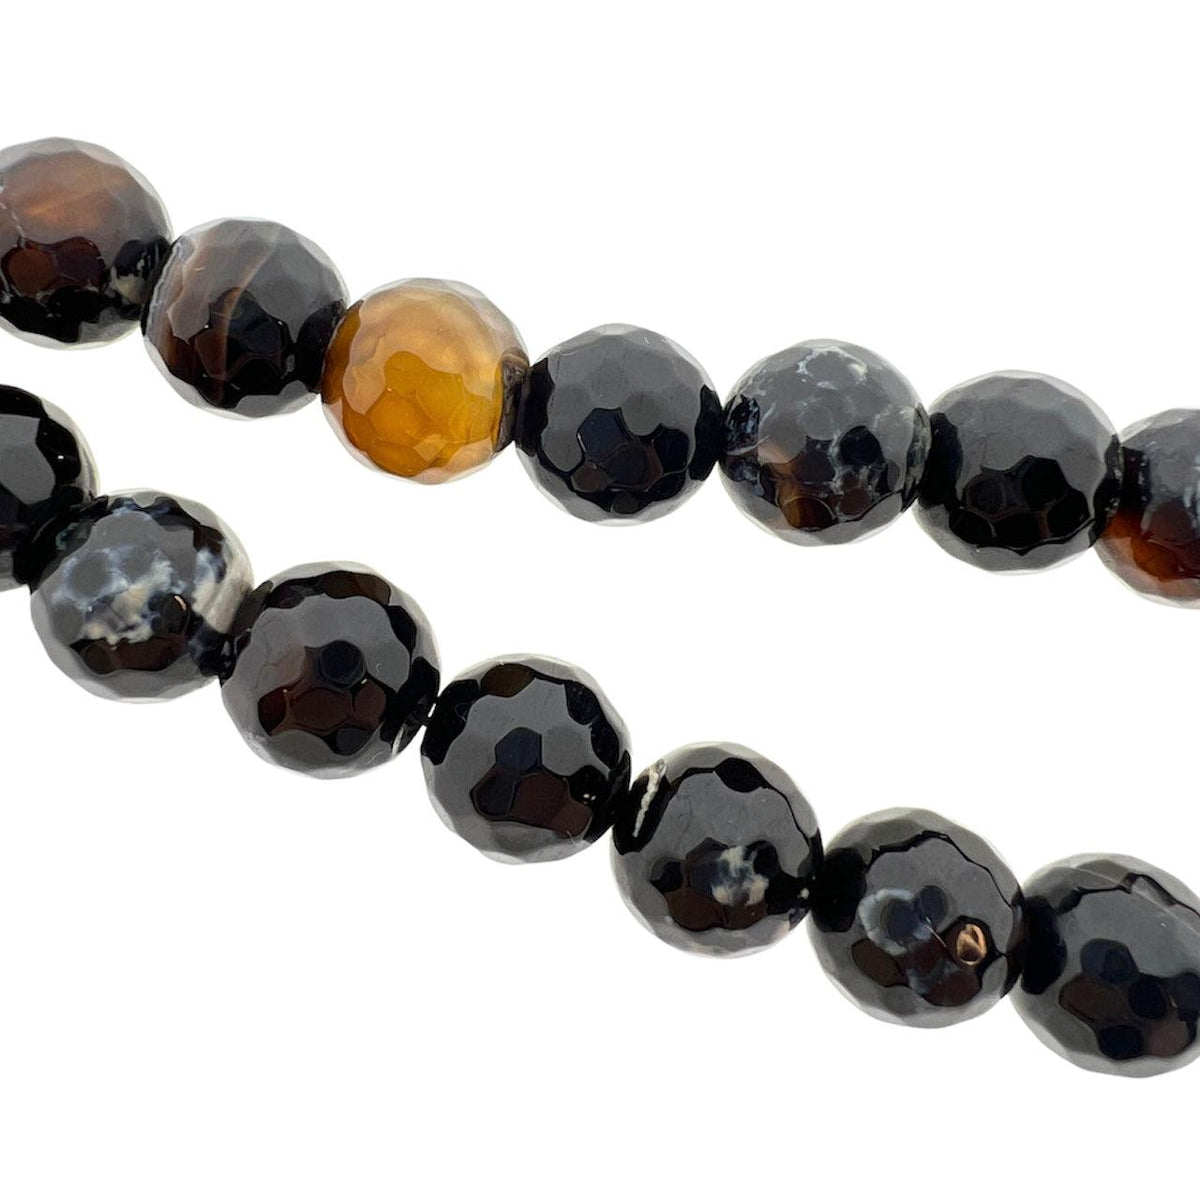 Edelsteen agaat bruin/zwart ±13mm- per stuk-Kralen-Kraaltjes van Renate